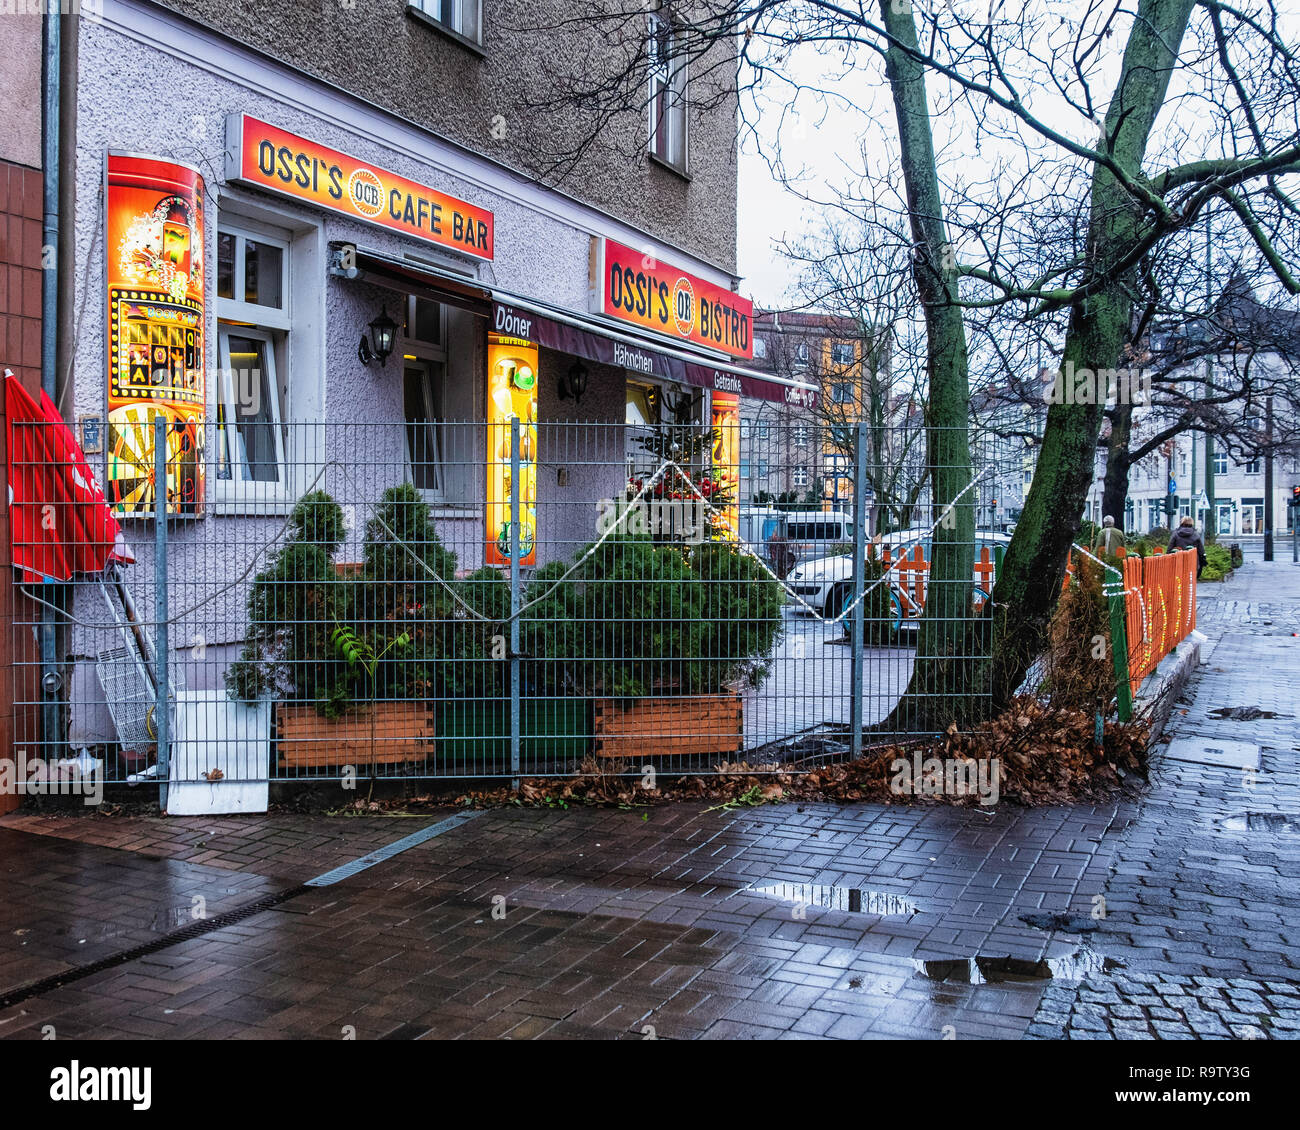 Berlin, Weissensee Rennbahnstrasse 2, Ossi's Bar & Café extérieur. Boutique de vente à emporter, fast food & snacks Banque D'Images